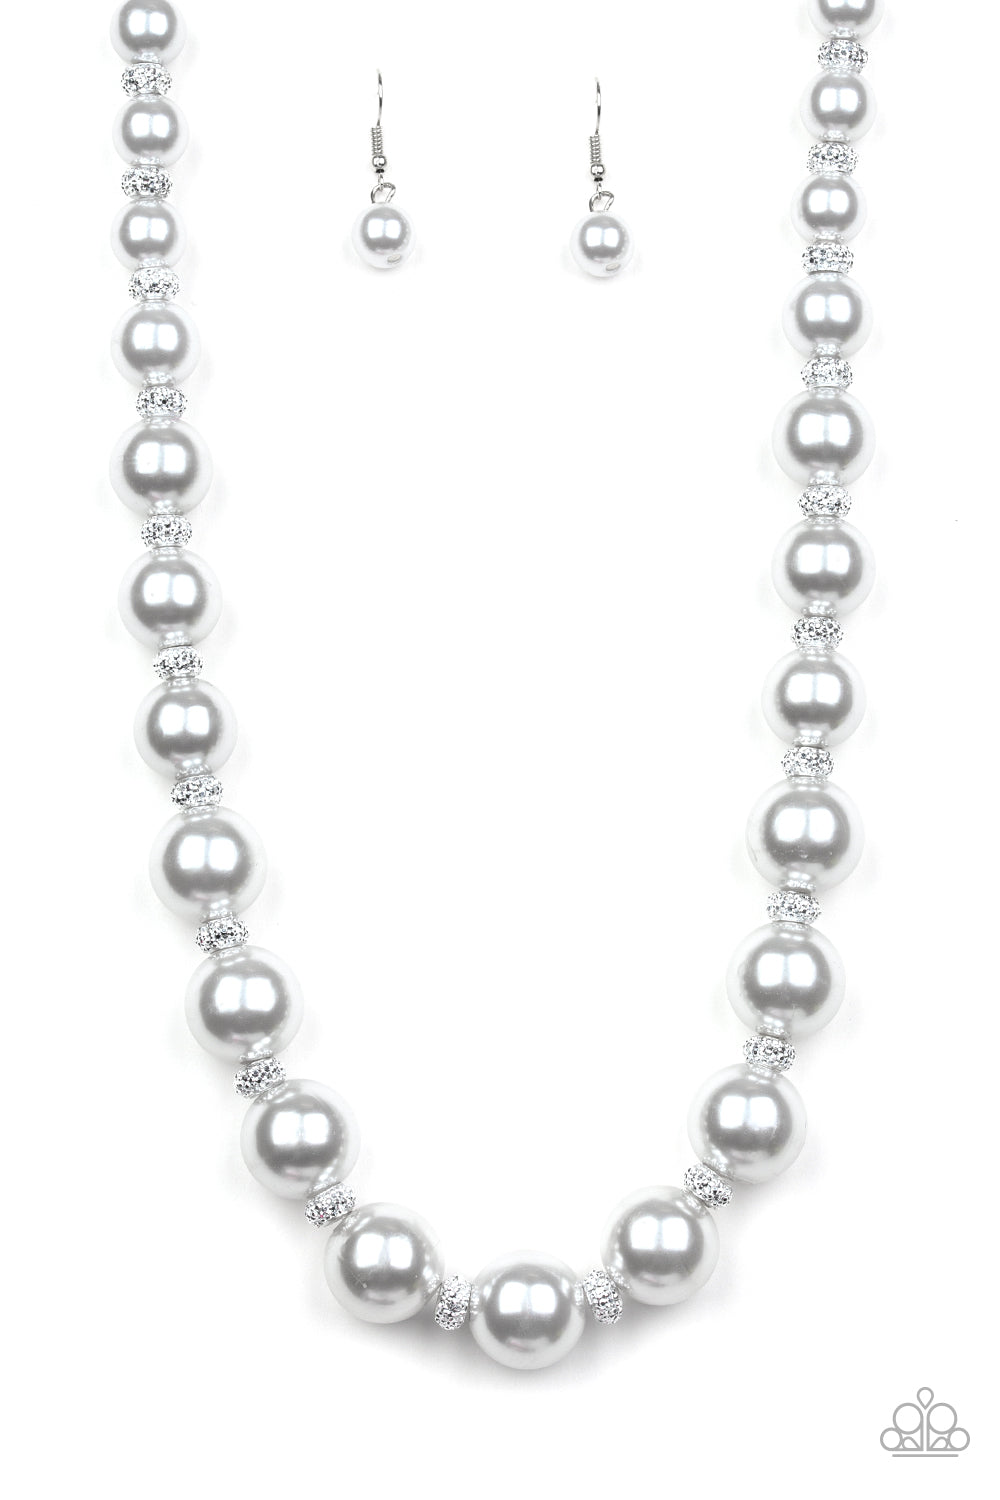 Posh Boss - Silver Necklace - Paparazzi Accessories – Bedazzle Me Pretty  Mobile Fashion Boutique